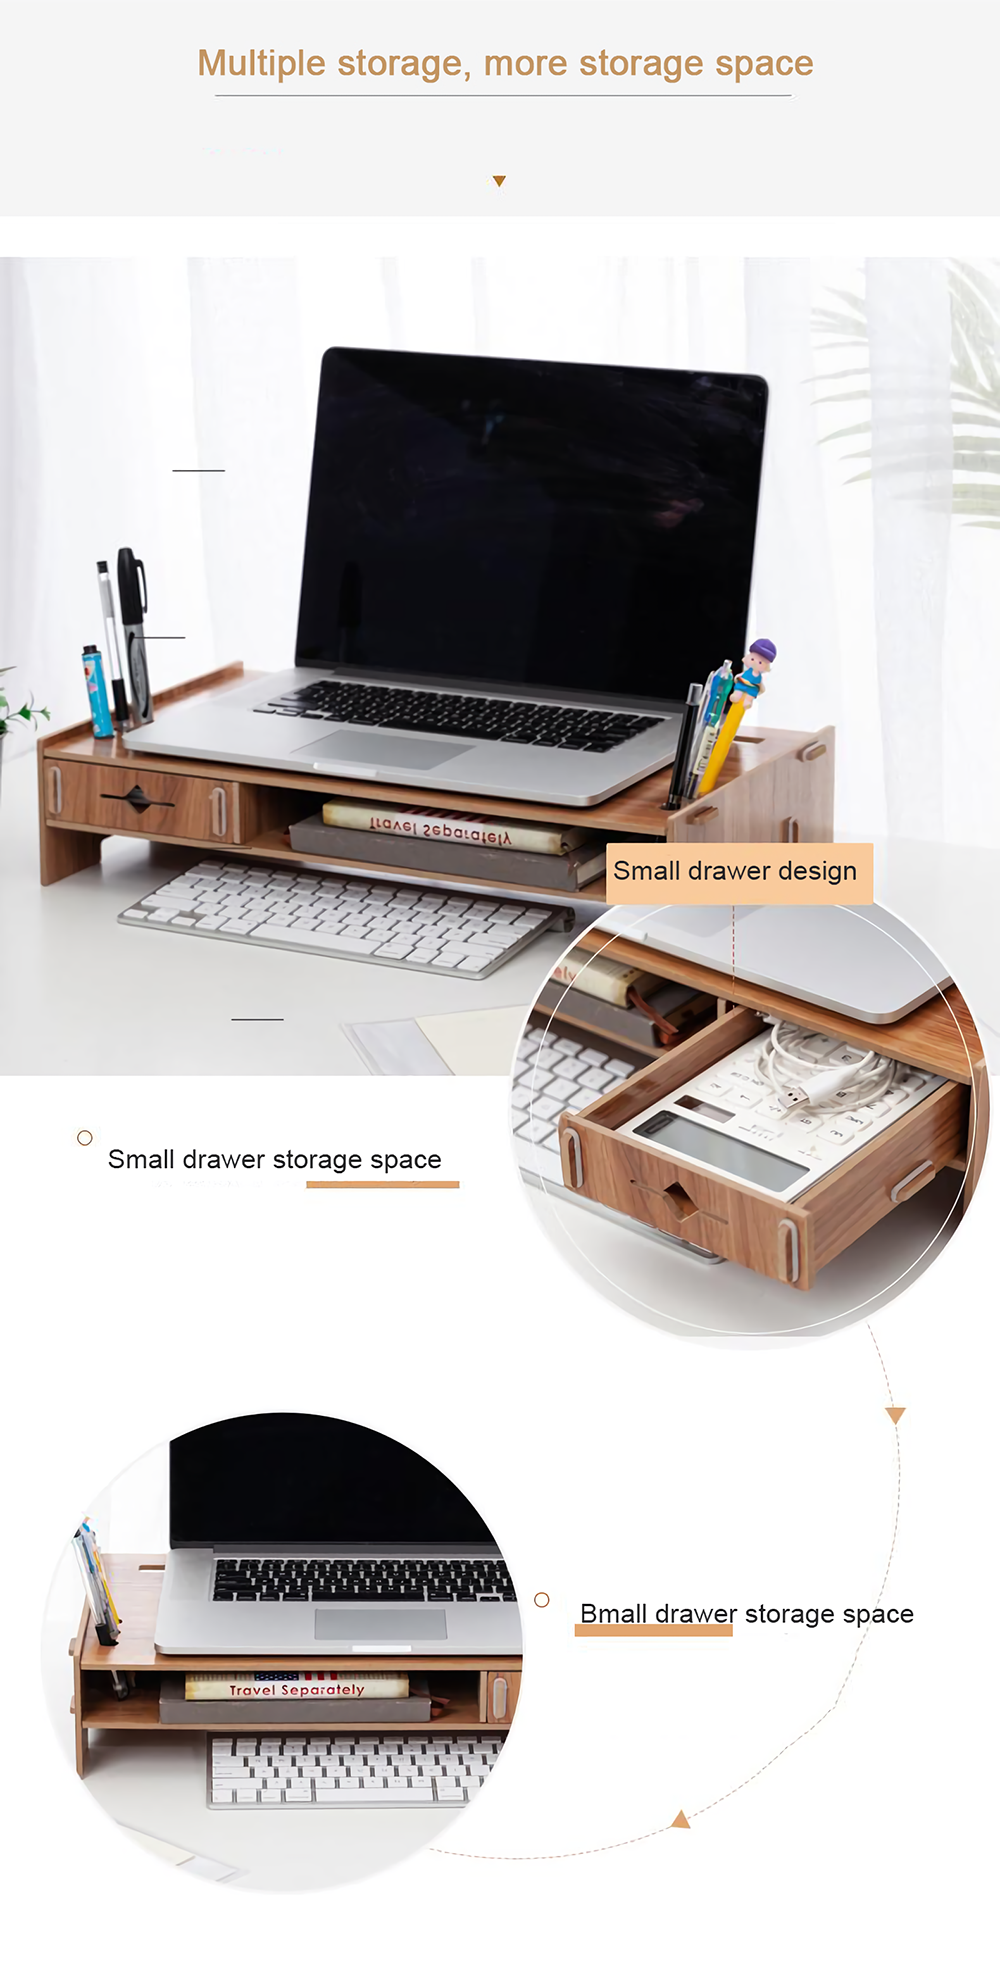 DIY-Wooden-Computer-Laptop-Stand-Holder-Monitor-Riser-Desk-Organizer-Stand-Base-with-Storage-Organiz-1801670-4